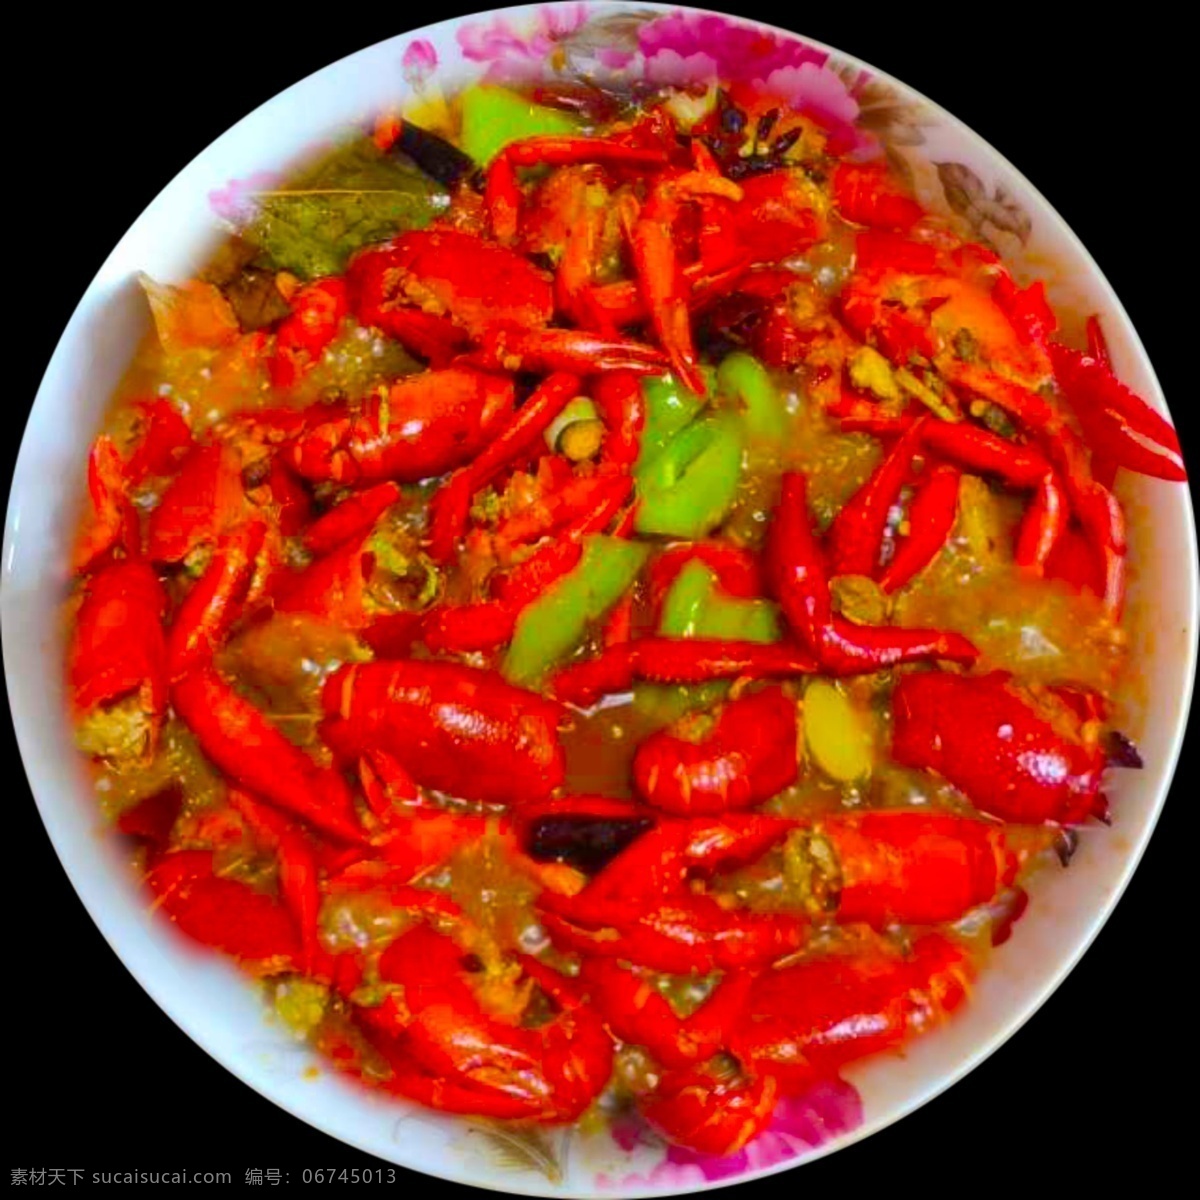 炒 龙虾 原创 炒龙虾 广告 食物 共享素材 餐饮美食 传统美食